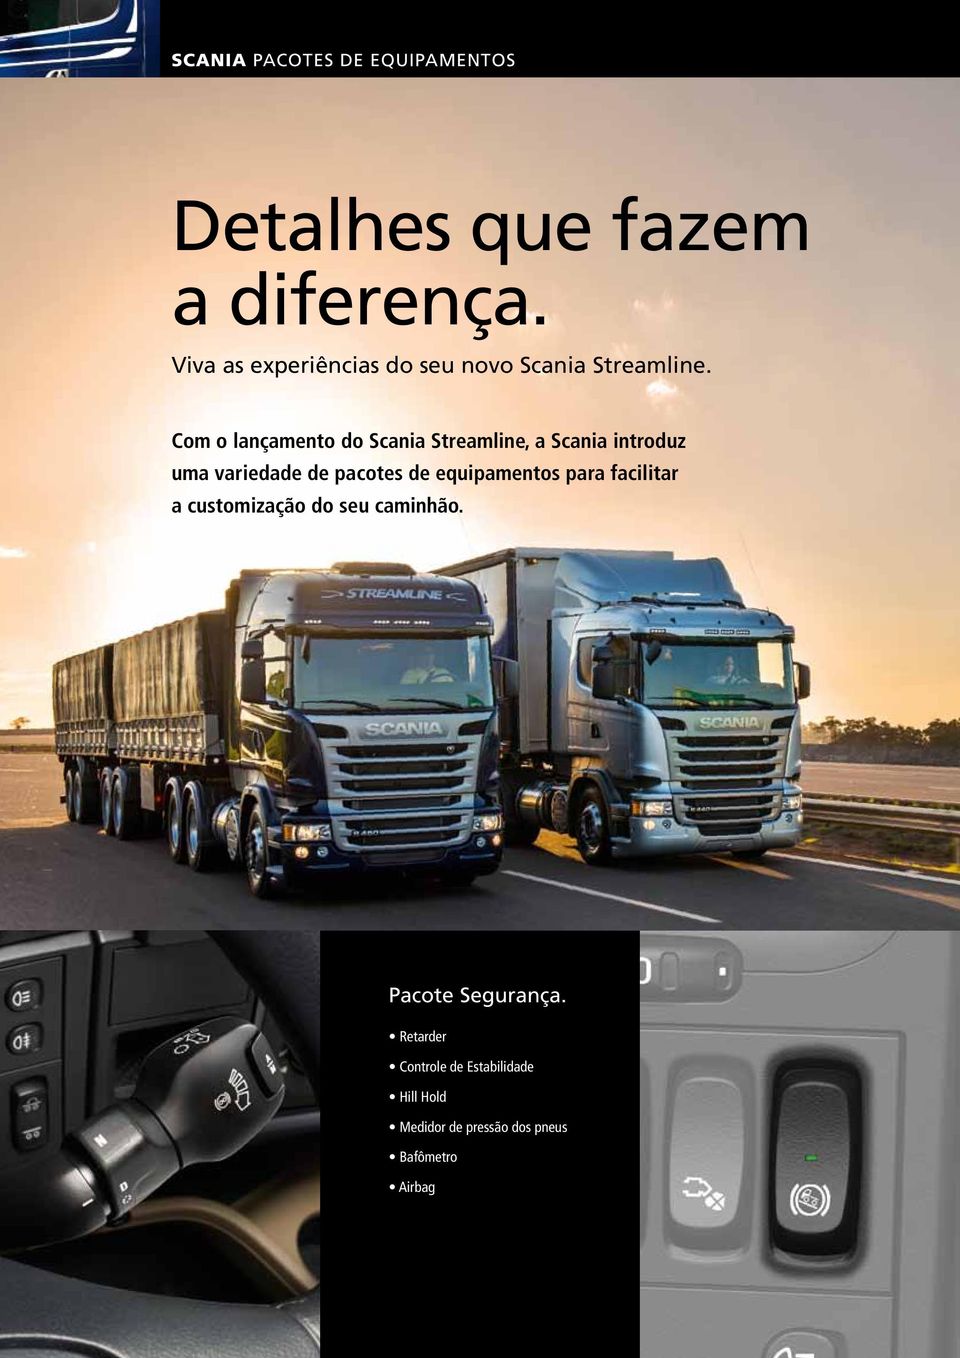 Com o lançamento do Scania Streamline, a Scania introduz uma variedade de pacotes de